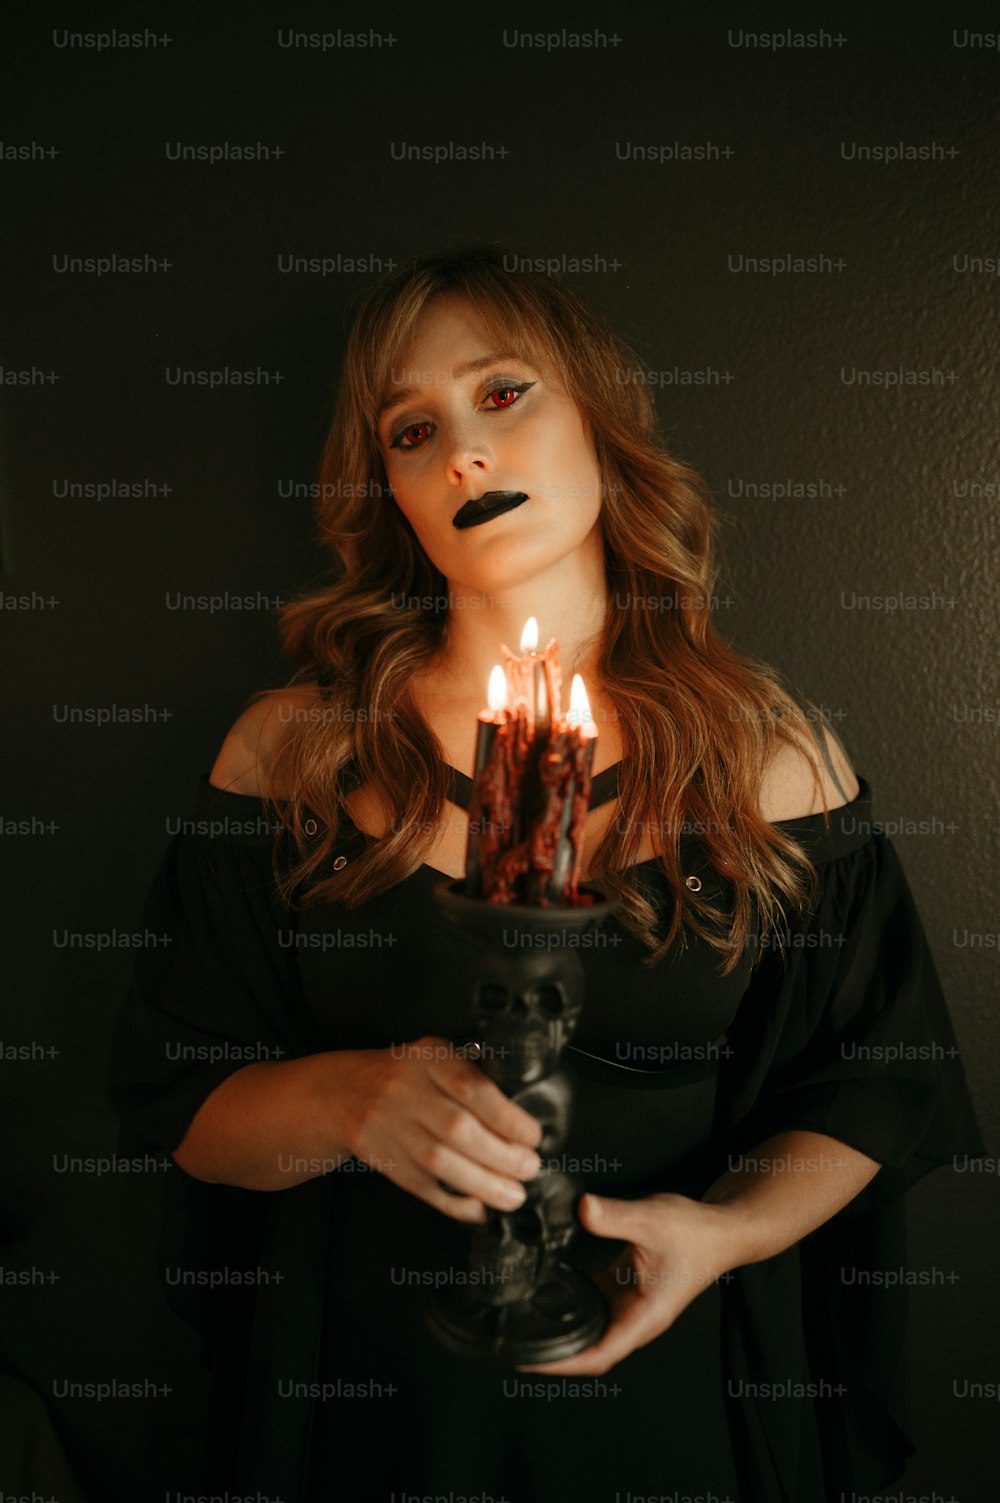 Eine Frau, die eine brennende Kerze in den Händen hält